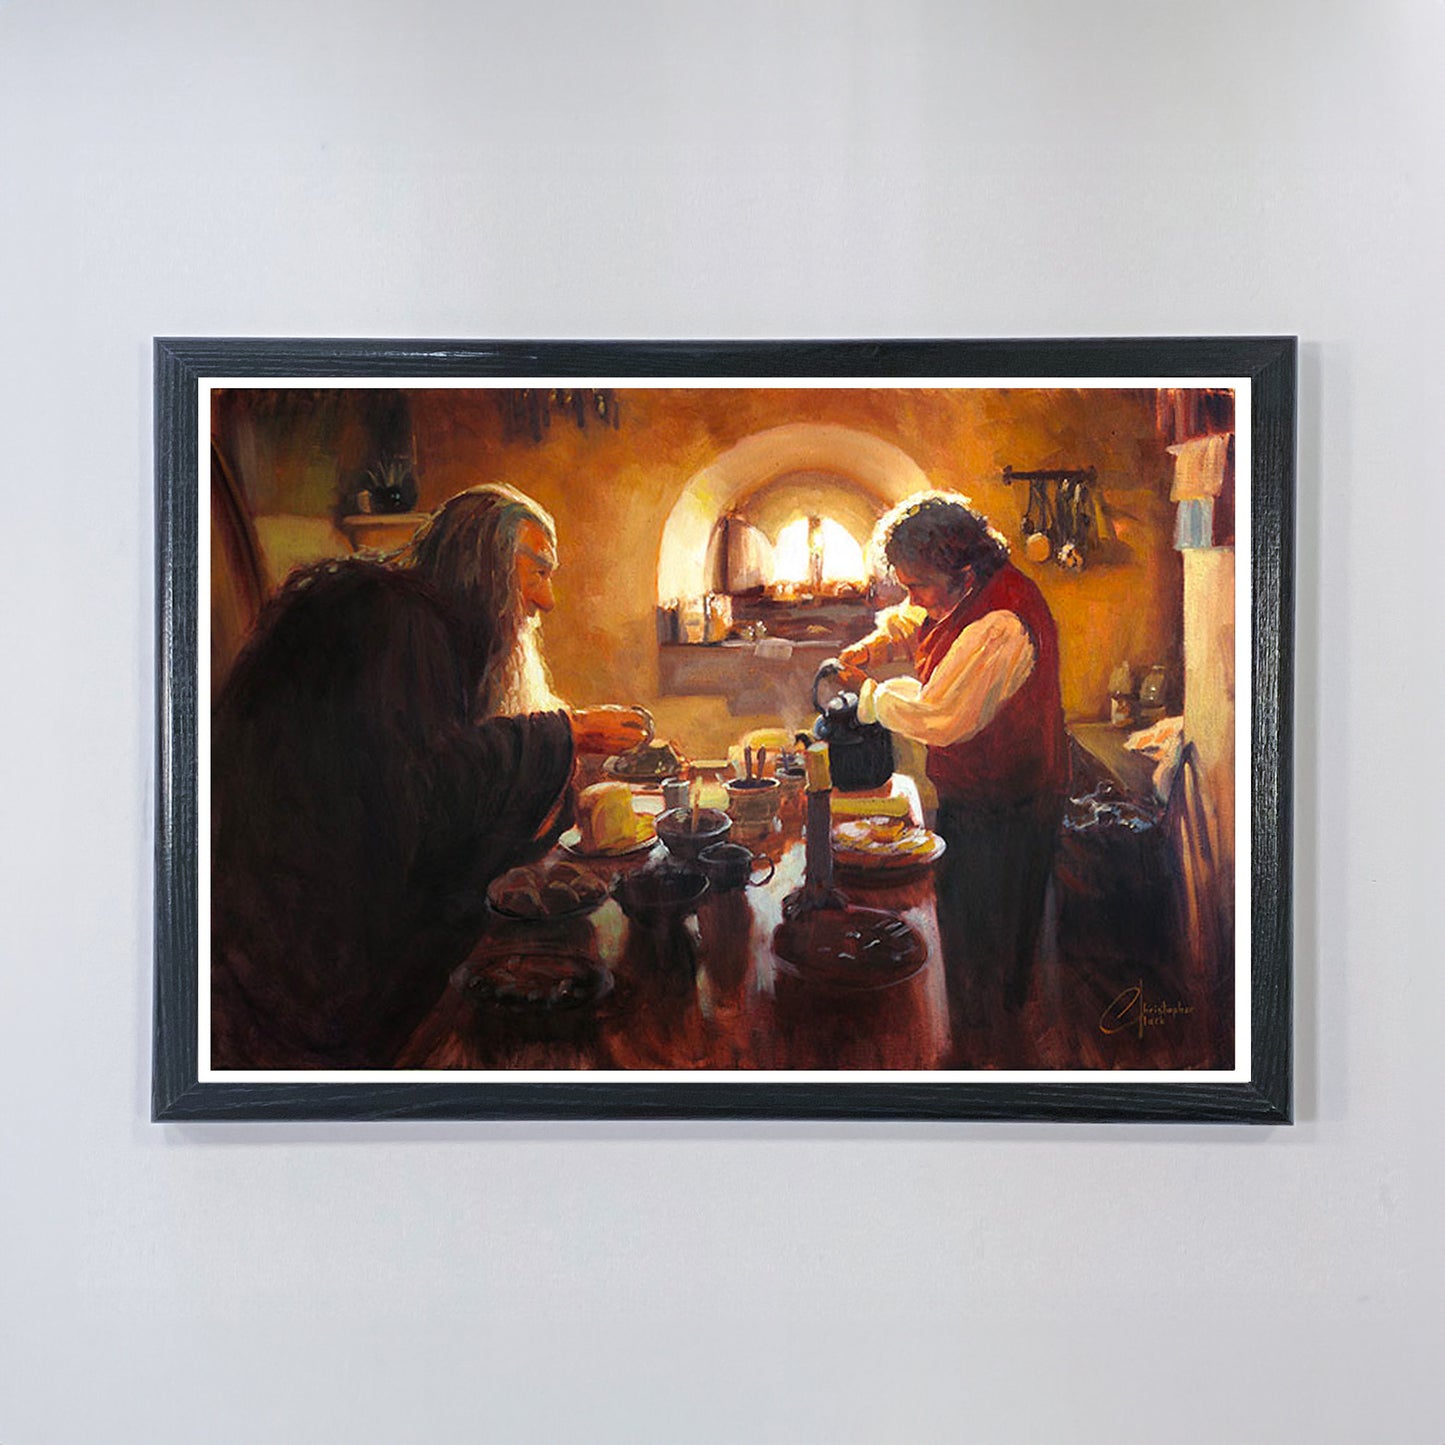 Gandalf and Bilbo Having Tea at Bag End (Lord of the Rings) Premium Art Print